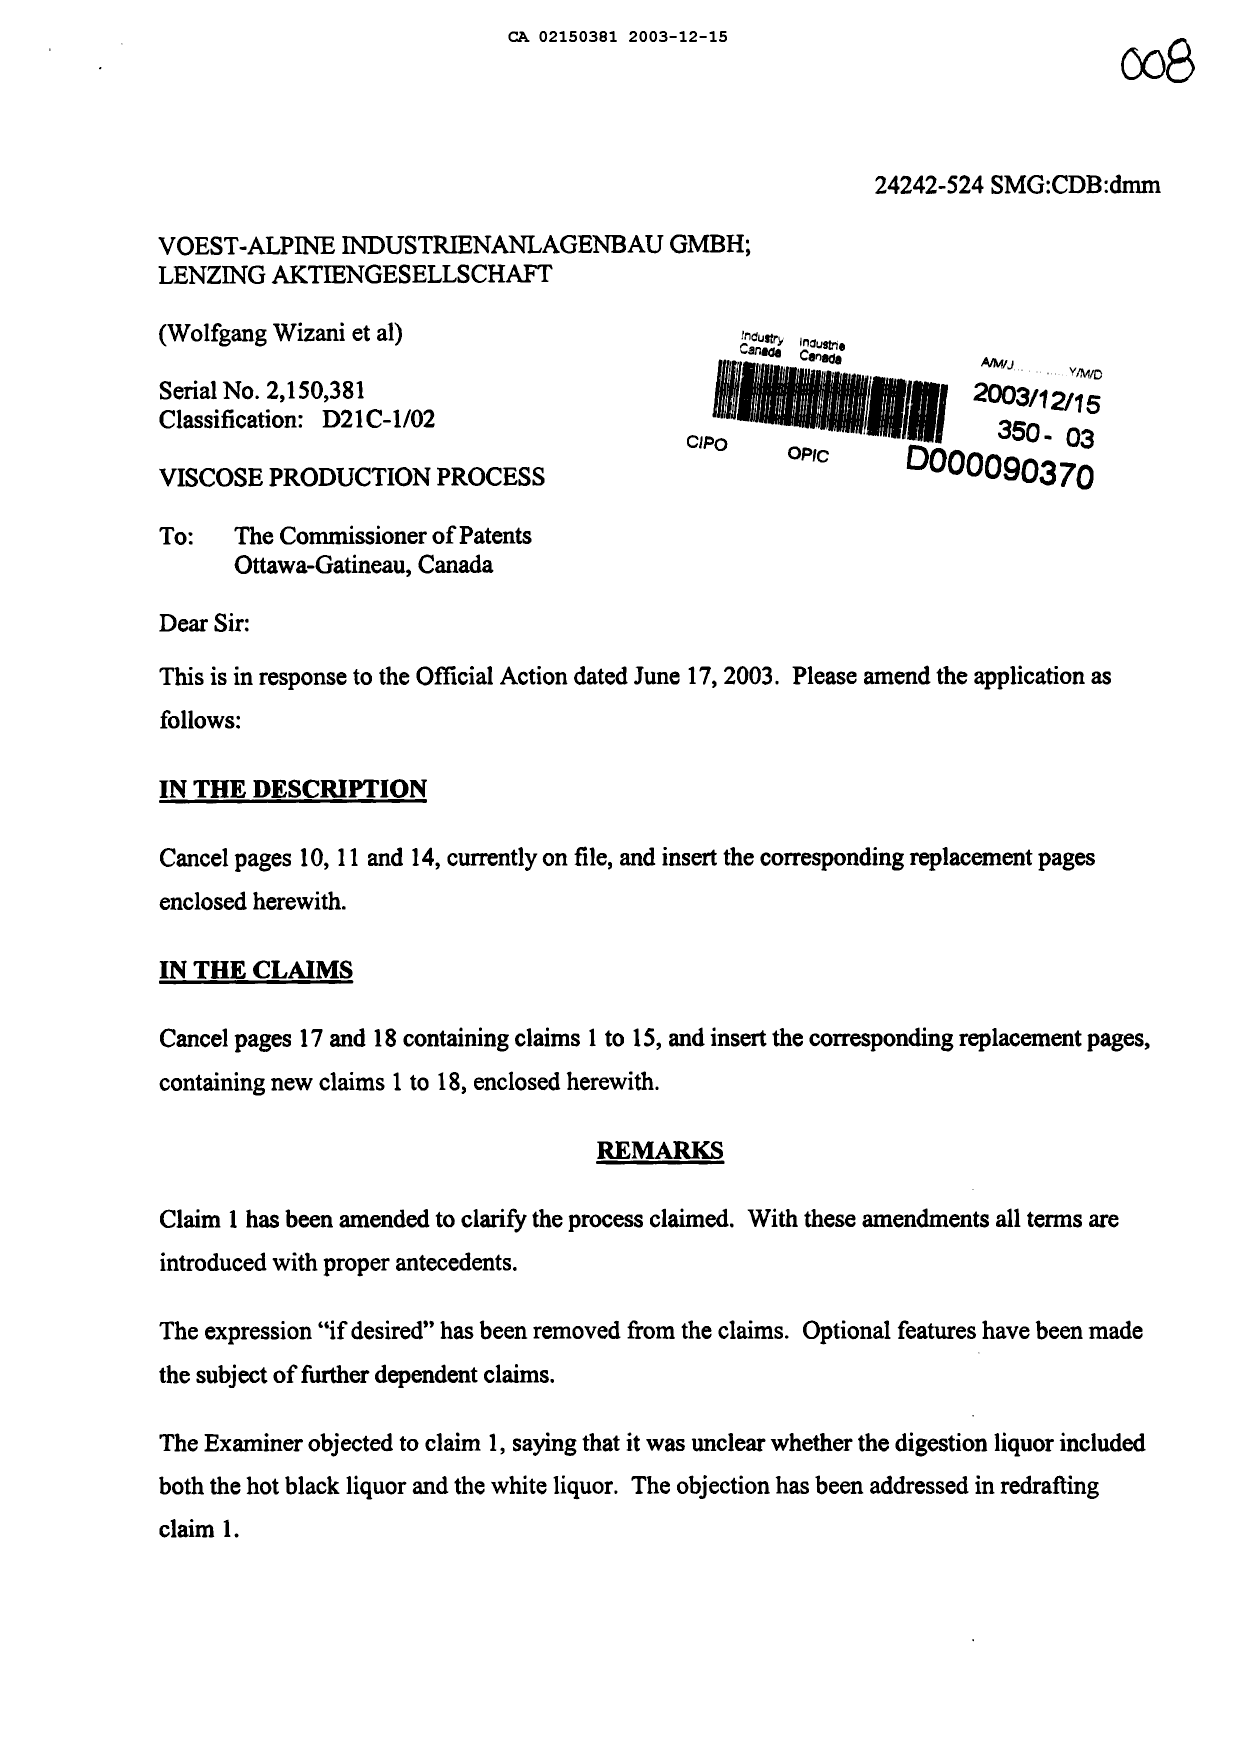 Document de brevet canadien 2150381. Poursuite-Amendment 20031215. Image 1 de 12